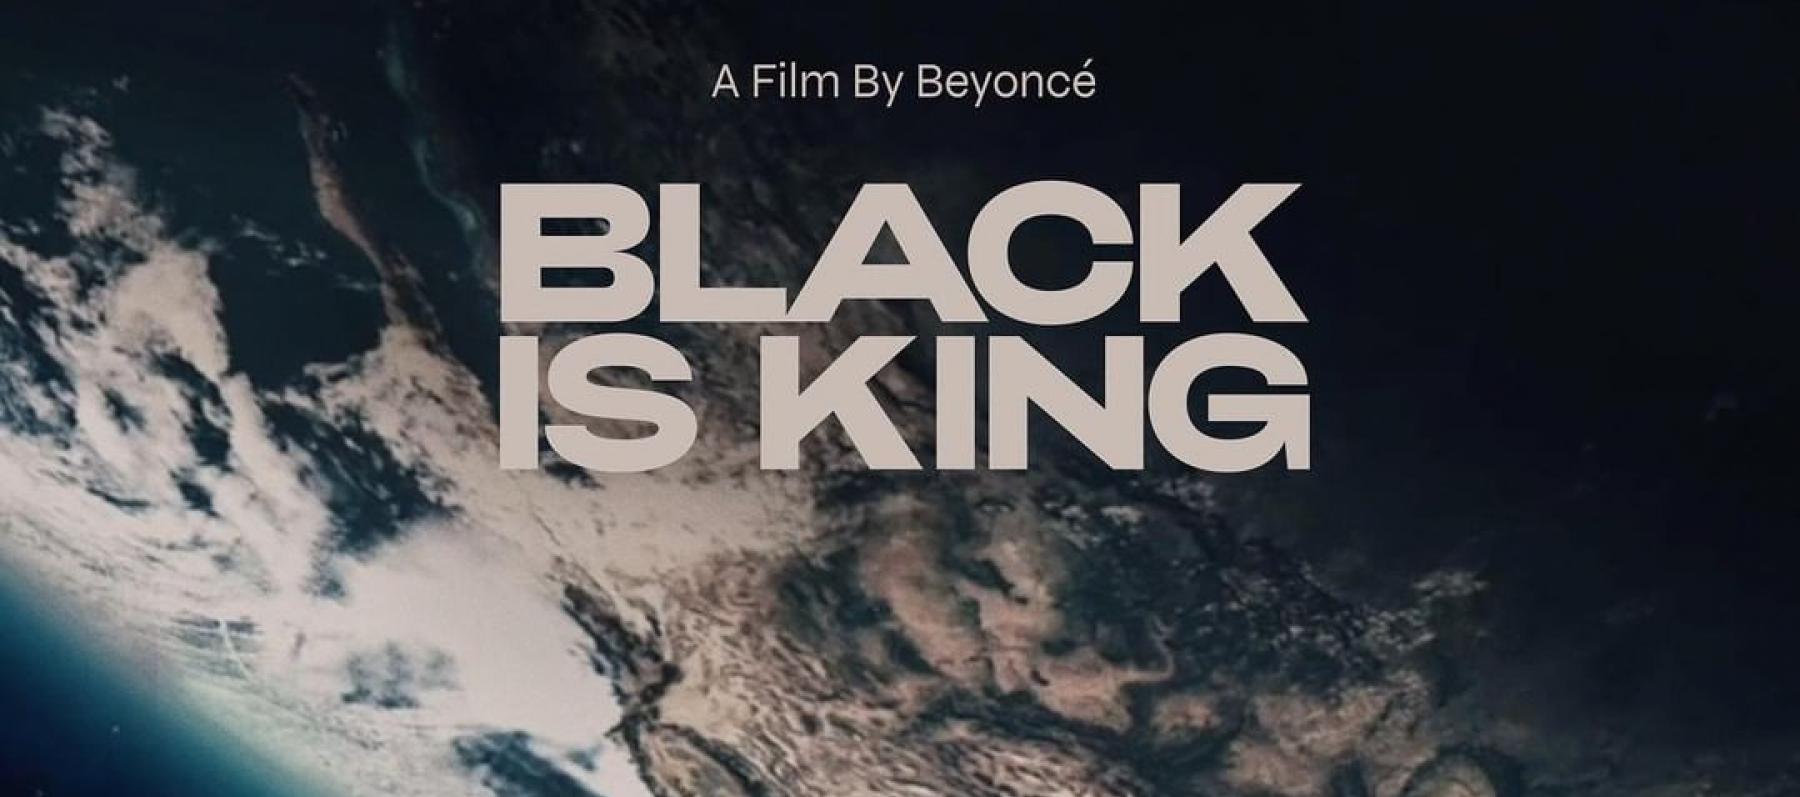 بوستر Black Is King - انستغرام @disney